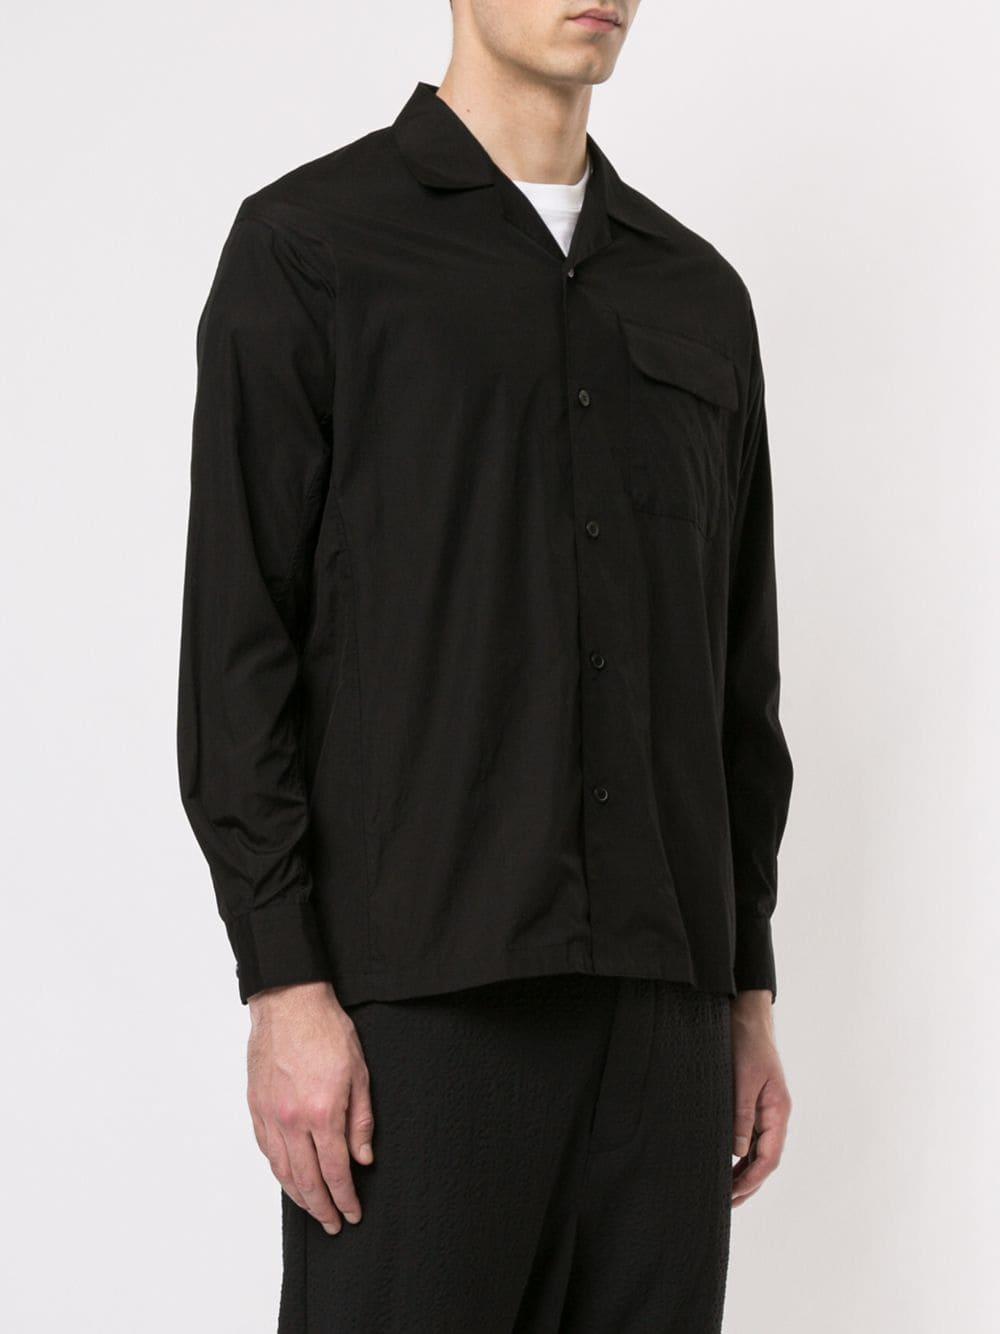 Yohji Yamamoto Cuban Collar Shirt in Black for Men - Lyst